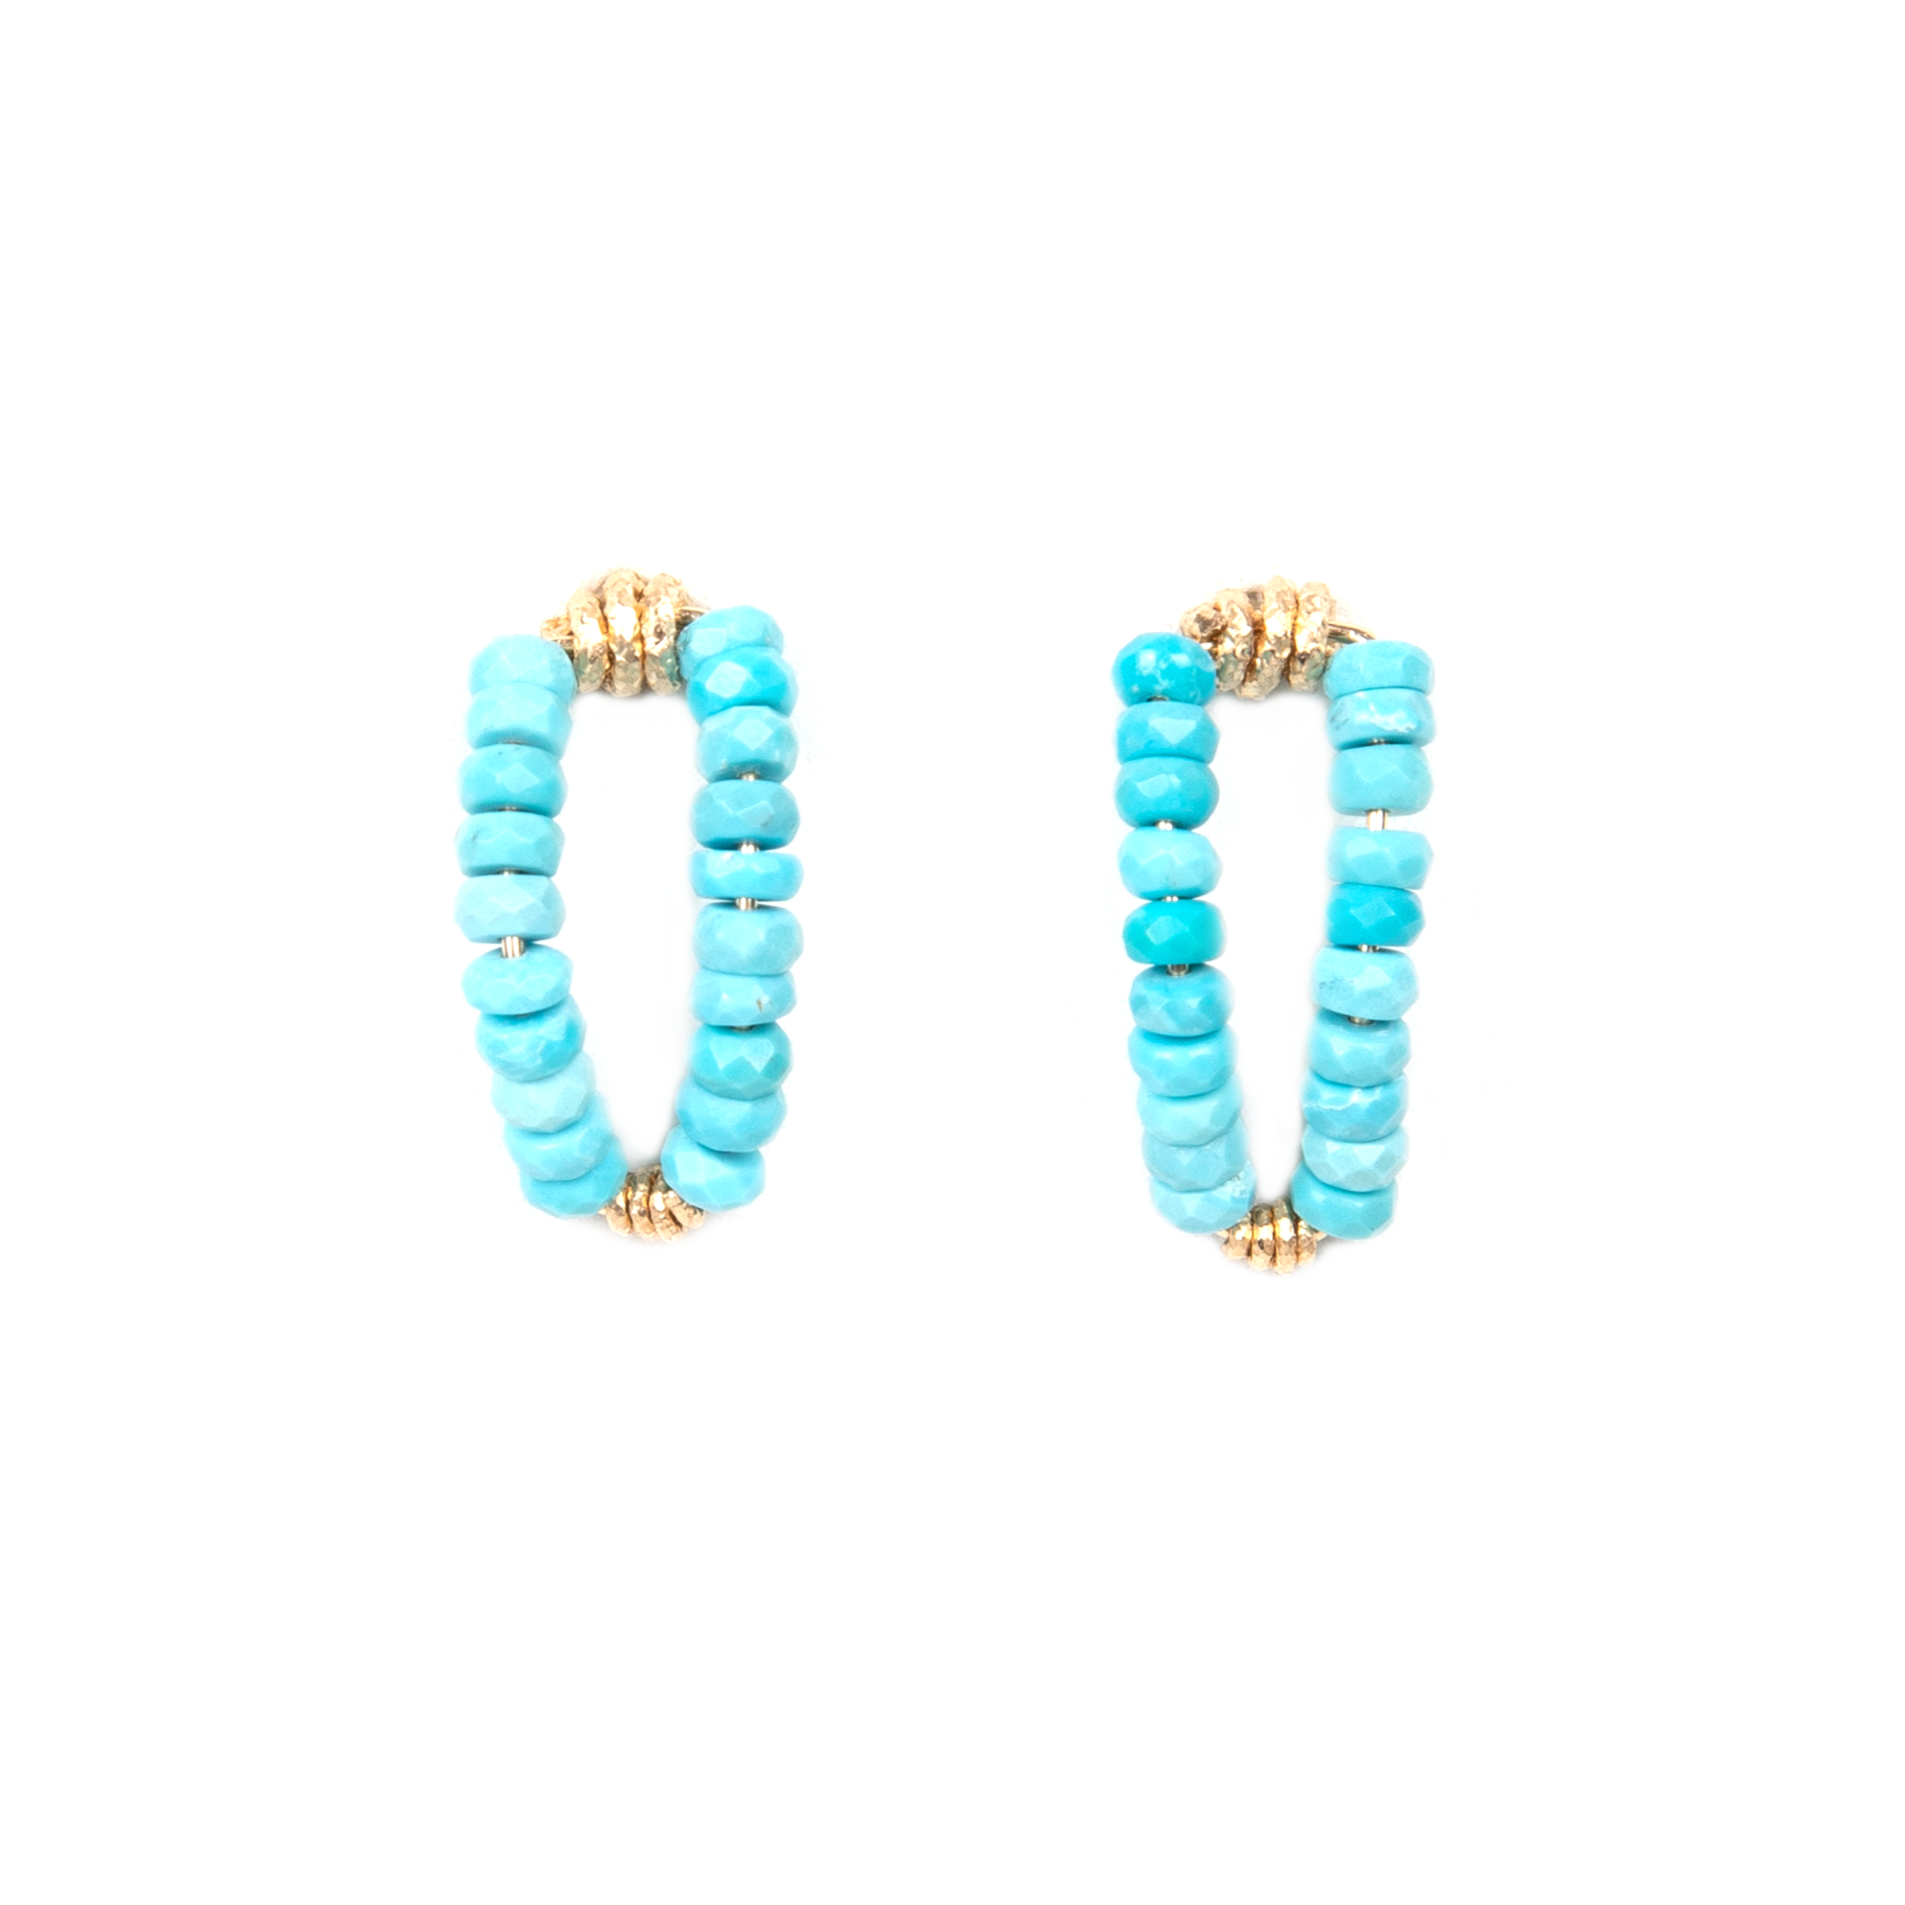 Myosotis Earrings - Turquoise & Apatite Earrings TARBAY   